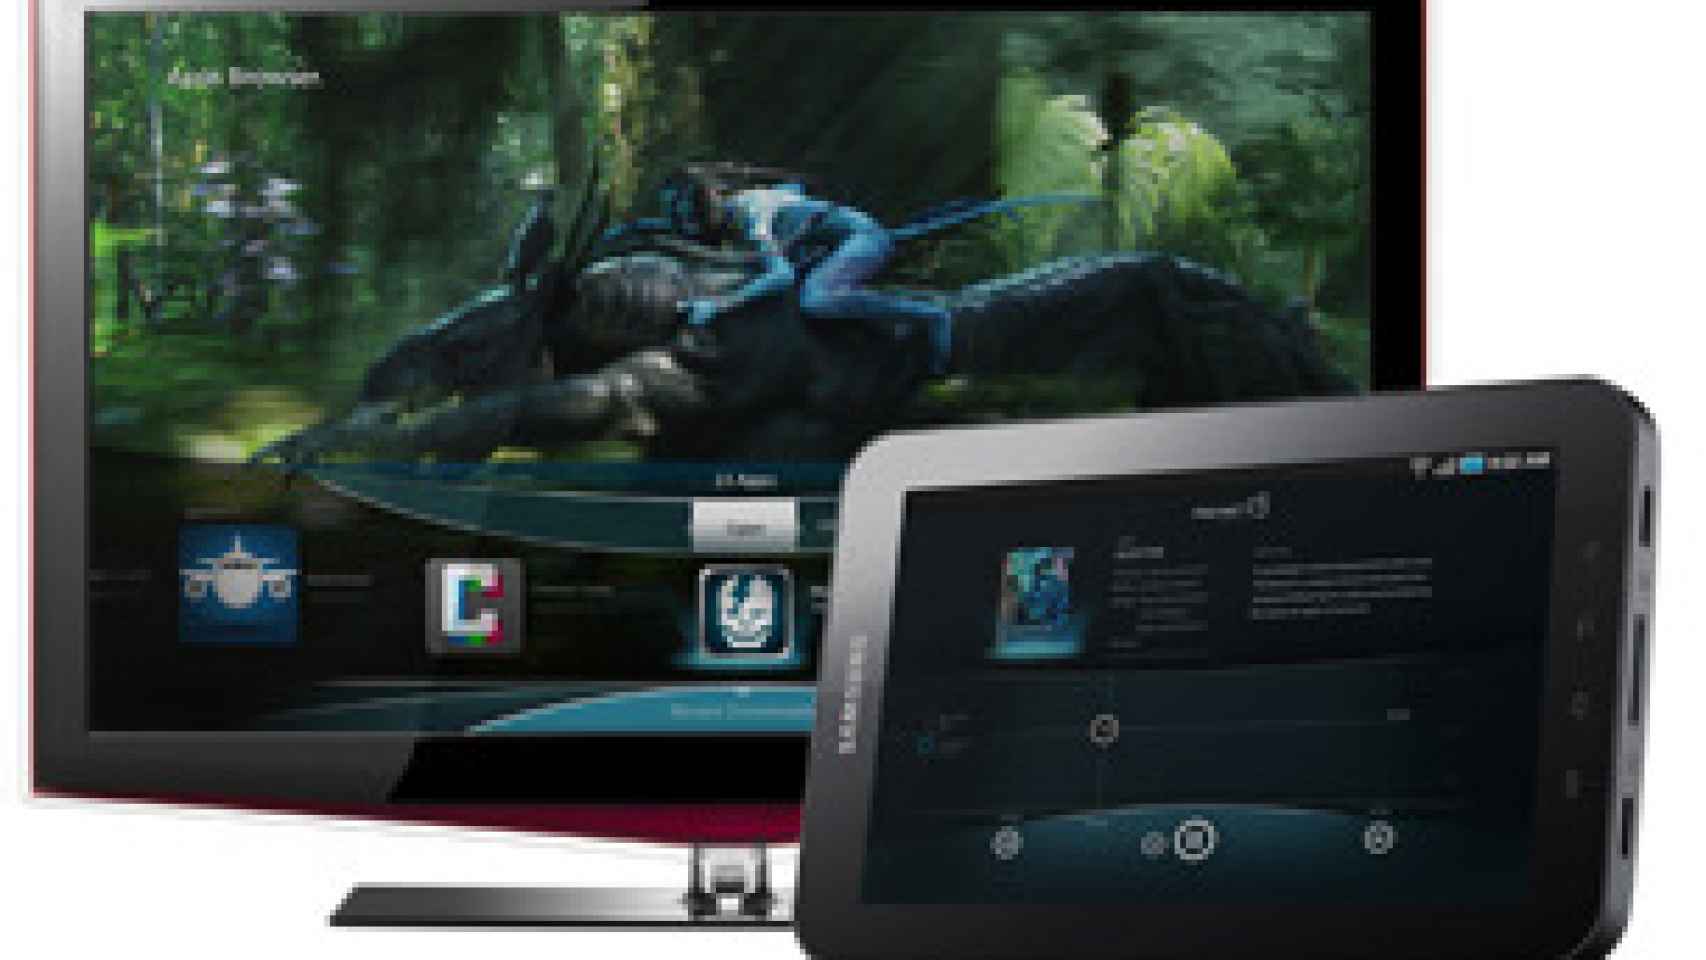 Las aplicaciones Android llegarán a cualquier TV gracias a Myriad Alien Vue